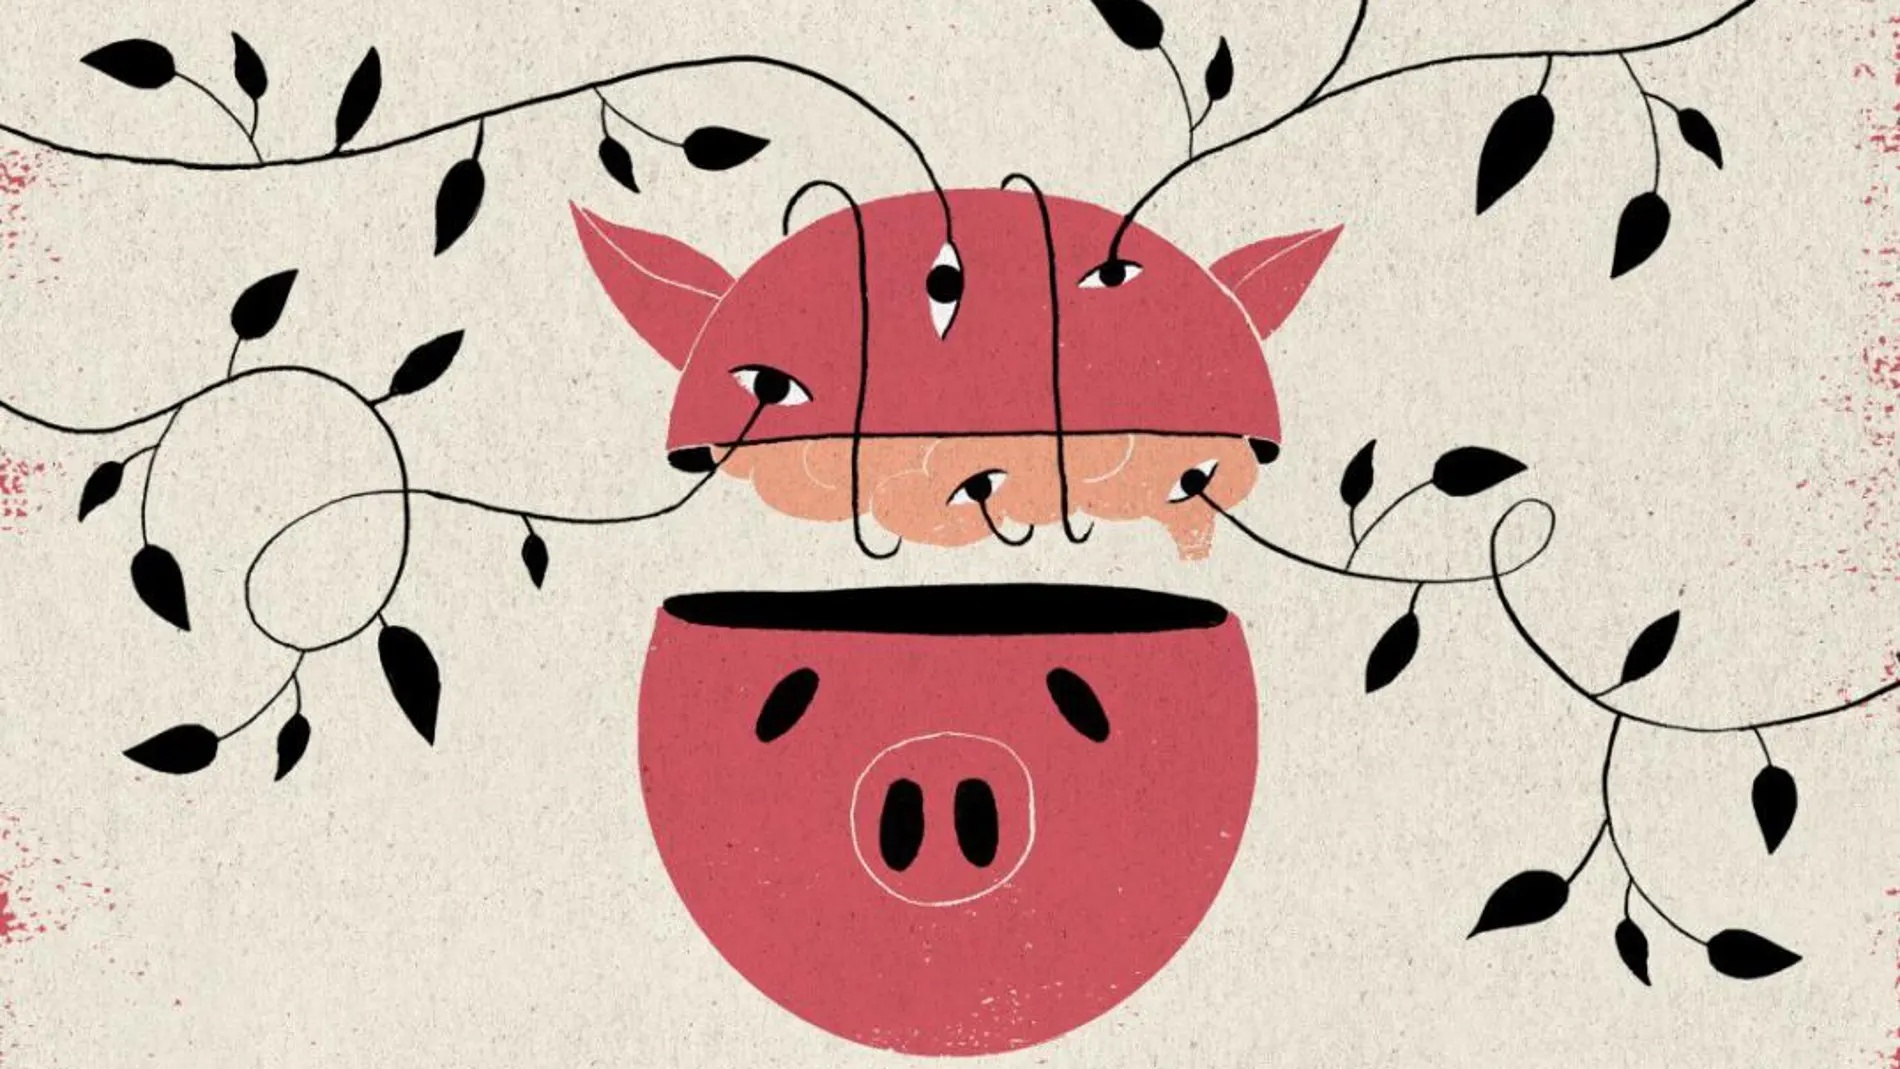 Investigadores norteamericanos han conseguido conservar vivos y con capacidad de actividad neuronal, pero sin registrar consciencia, los cerebros de casi 200 cerdos que habían pasado por el matadero